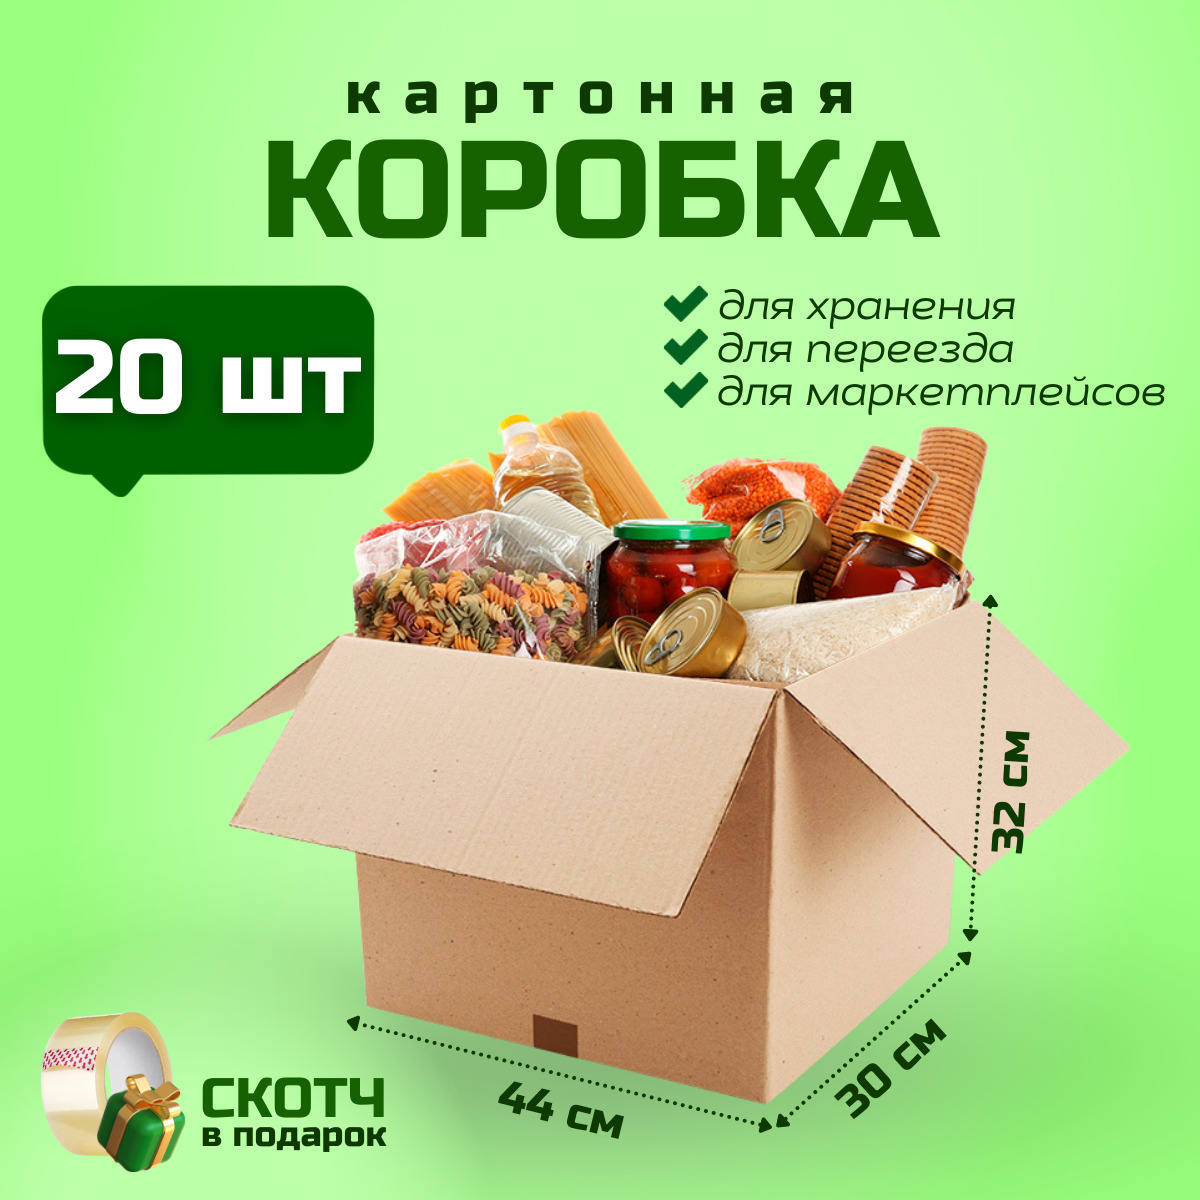 Коробка для переезда и хранения вещей PackVigoda 44х30х32см картон 20 шт